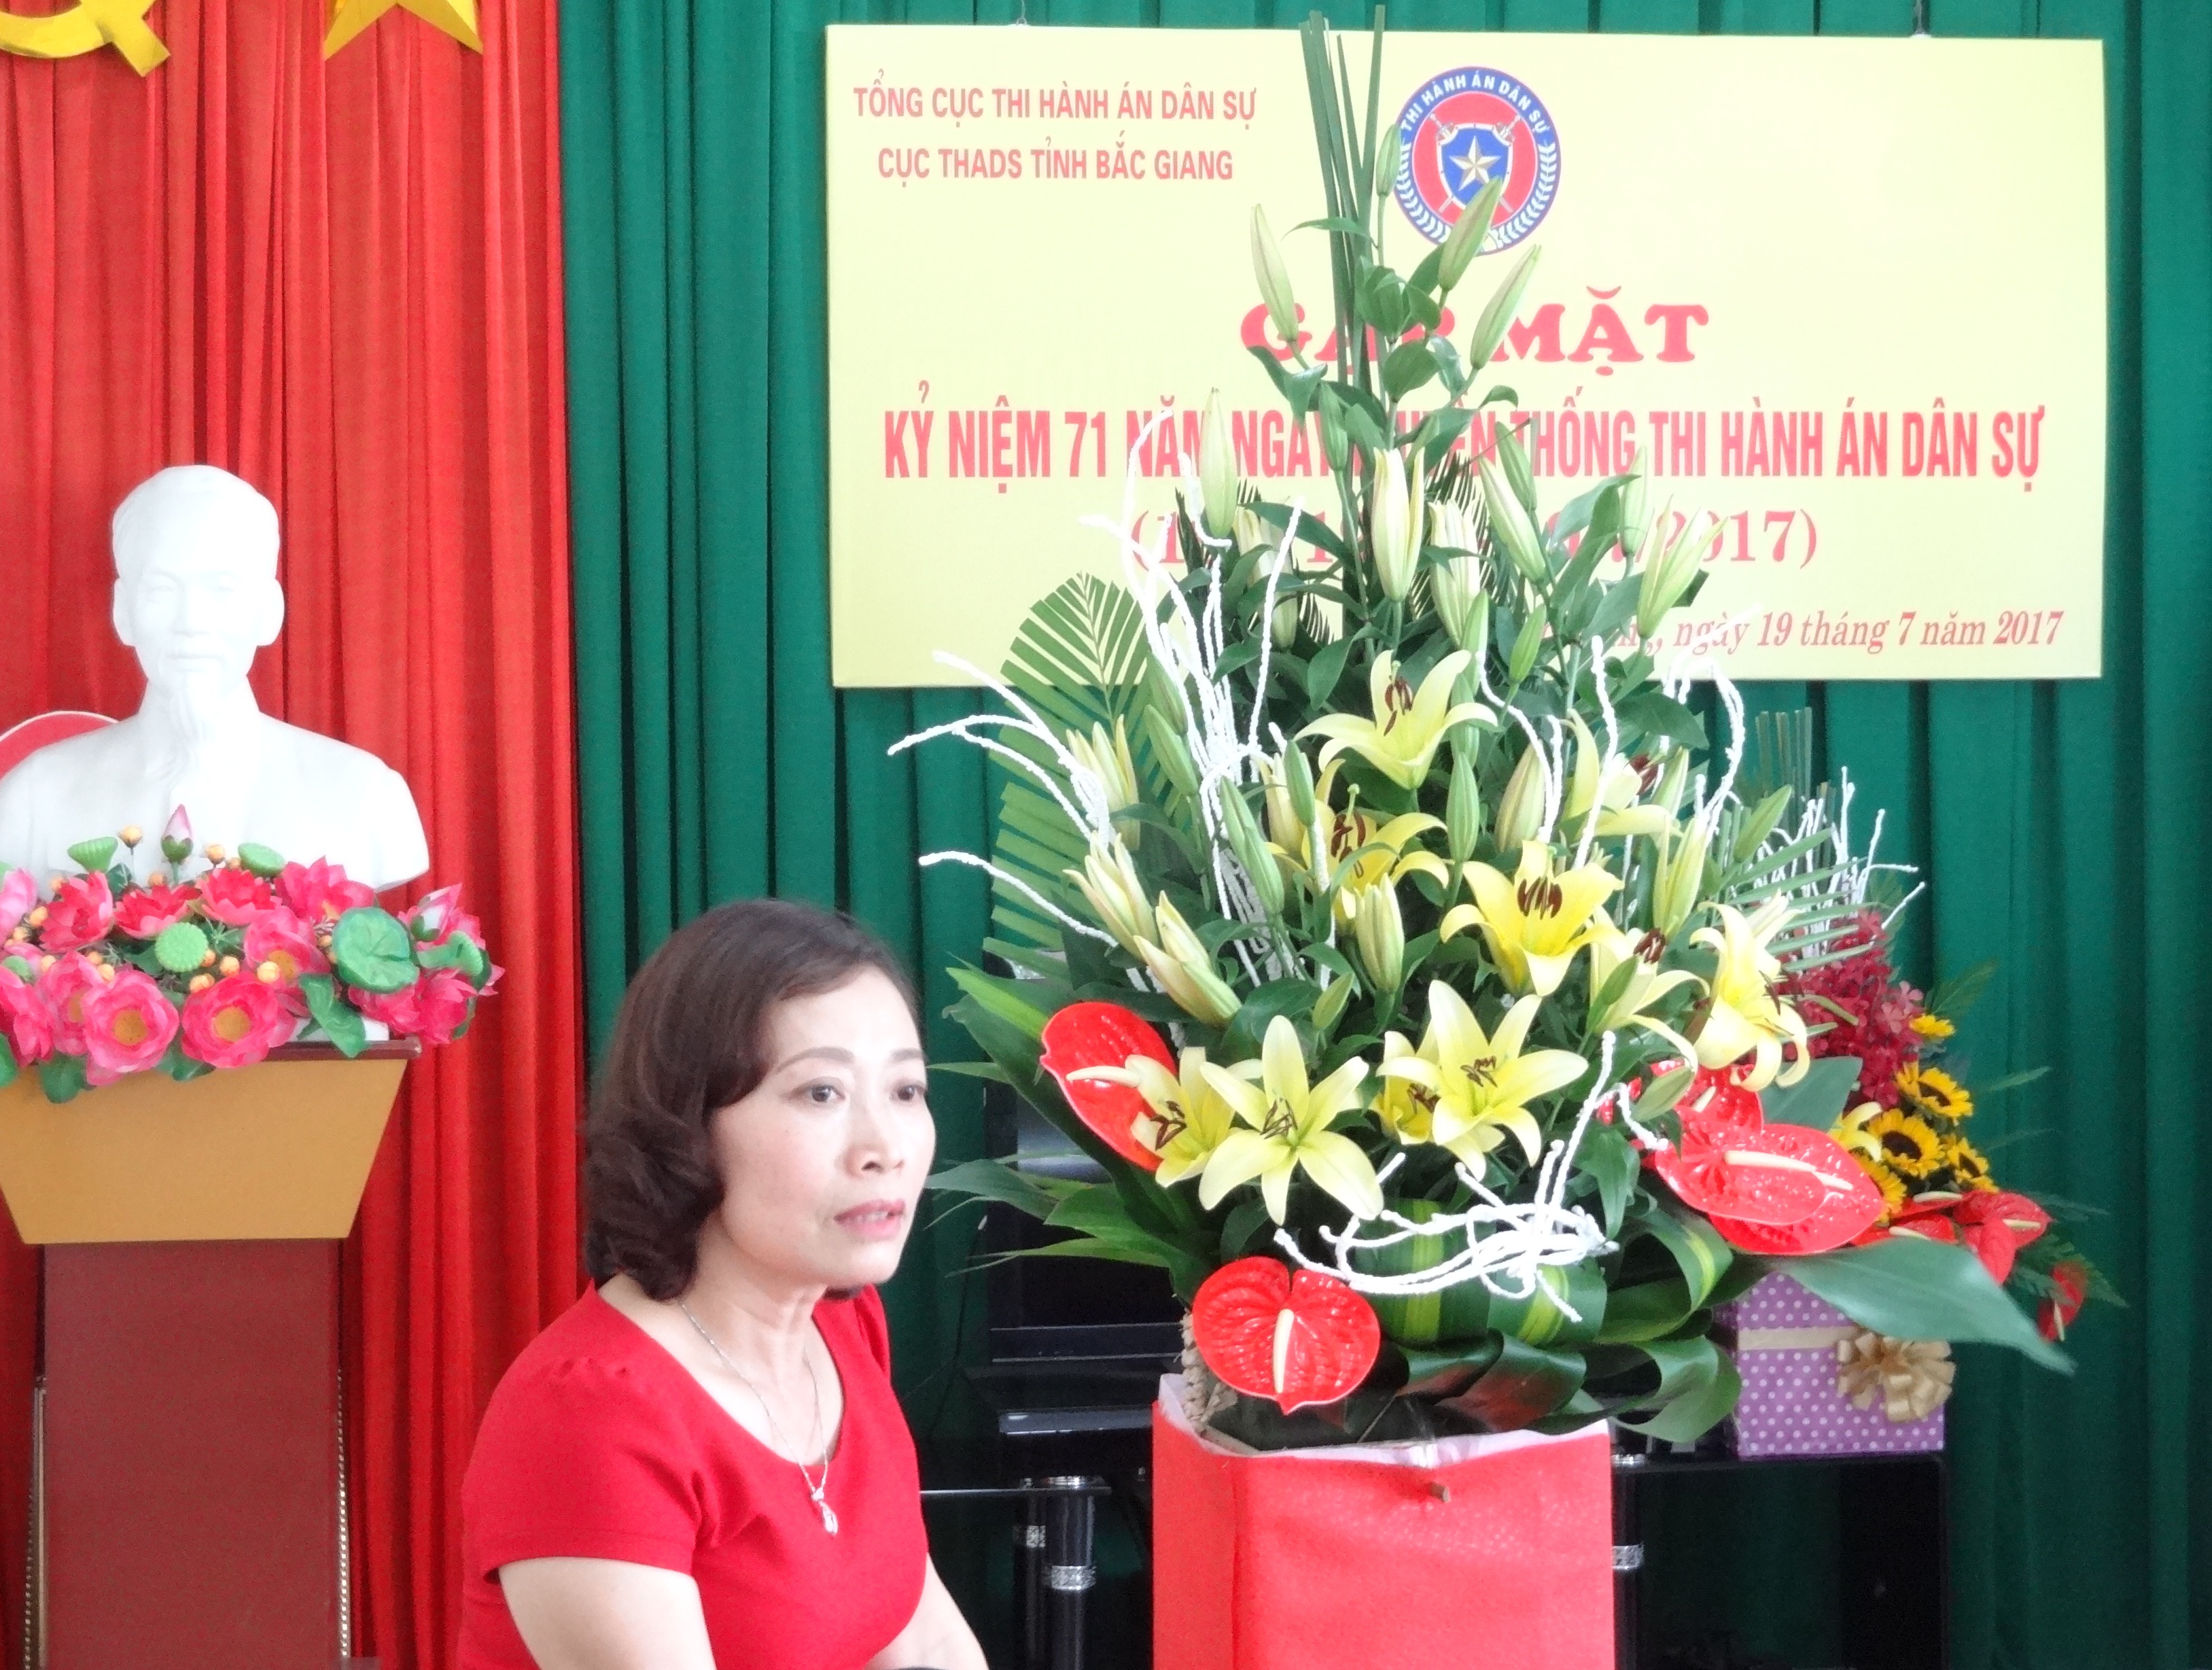 Cục Thi hành án dân sự tỉnh Bắc Giang tổ chức gặp mặt, nói chuyện nhân dịp Kỷ niệm 71 năm Ngày Truyền thống Thi hành án dân sự (19/7/1946-19/7/2017)